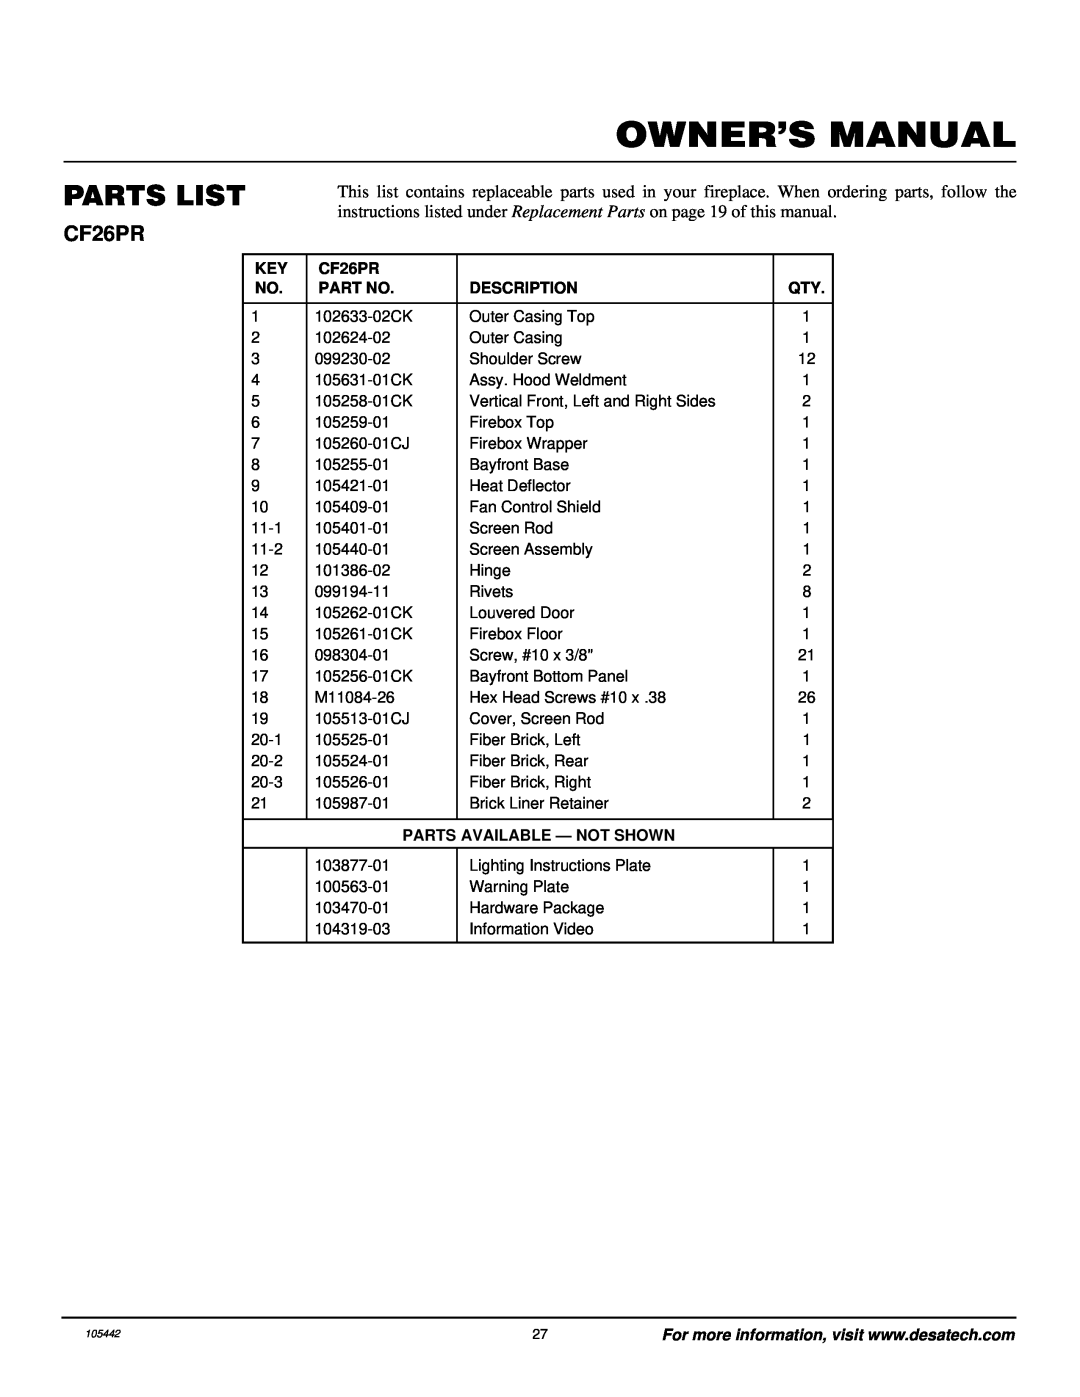 Desa CF26PR installation manual Parts List, Description, Parts Available - Not Shown 